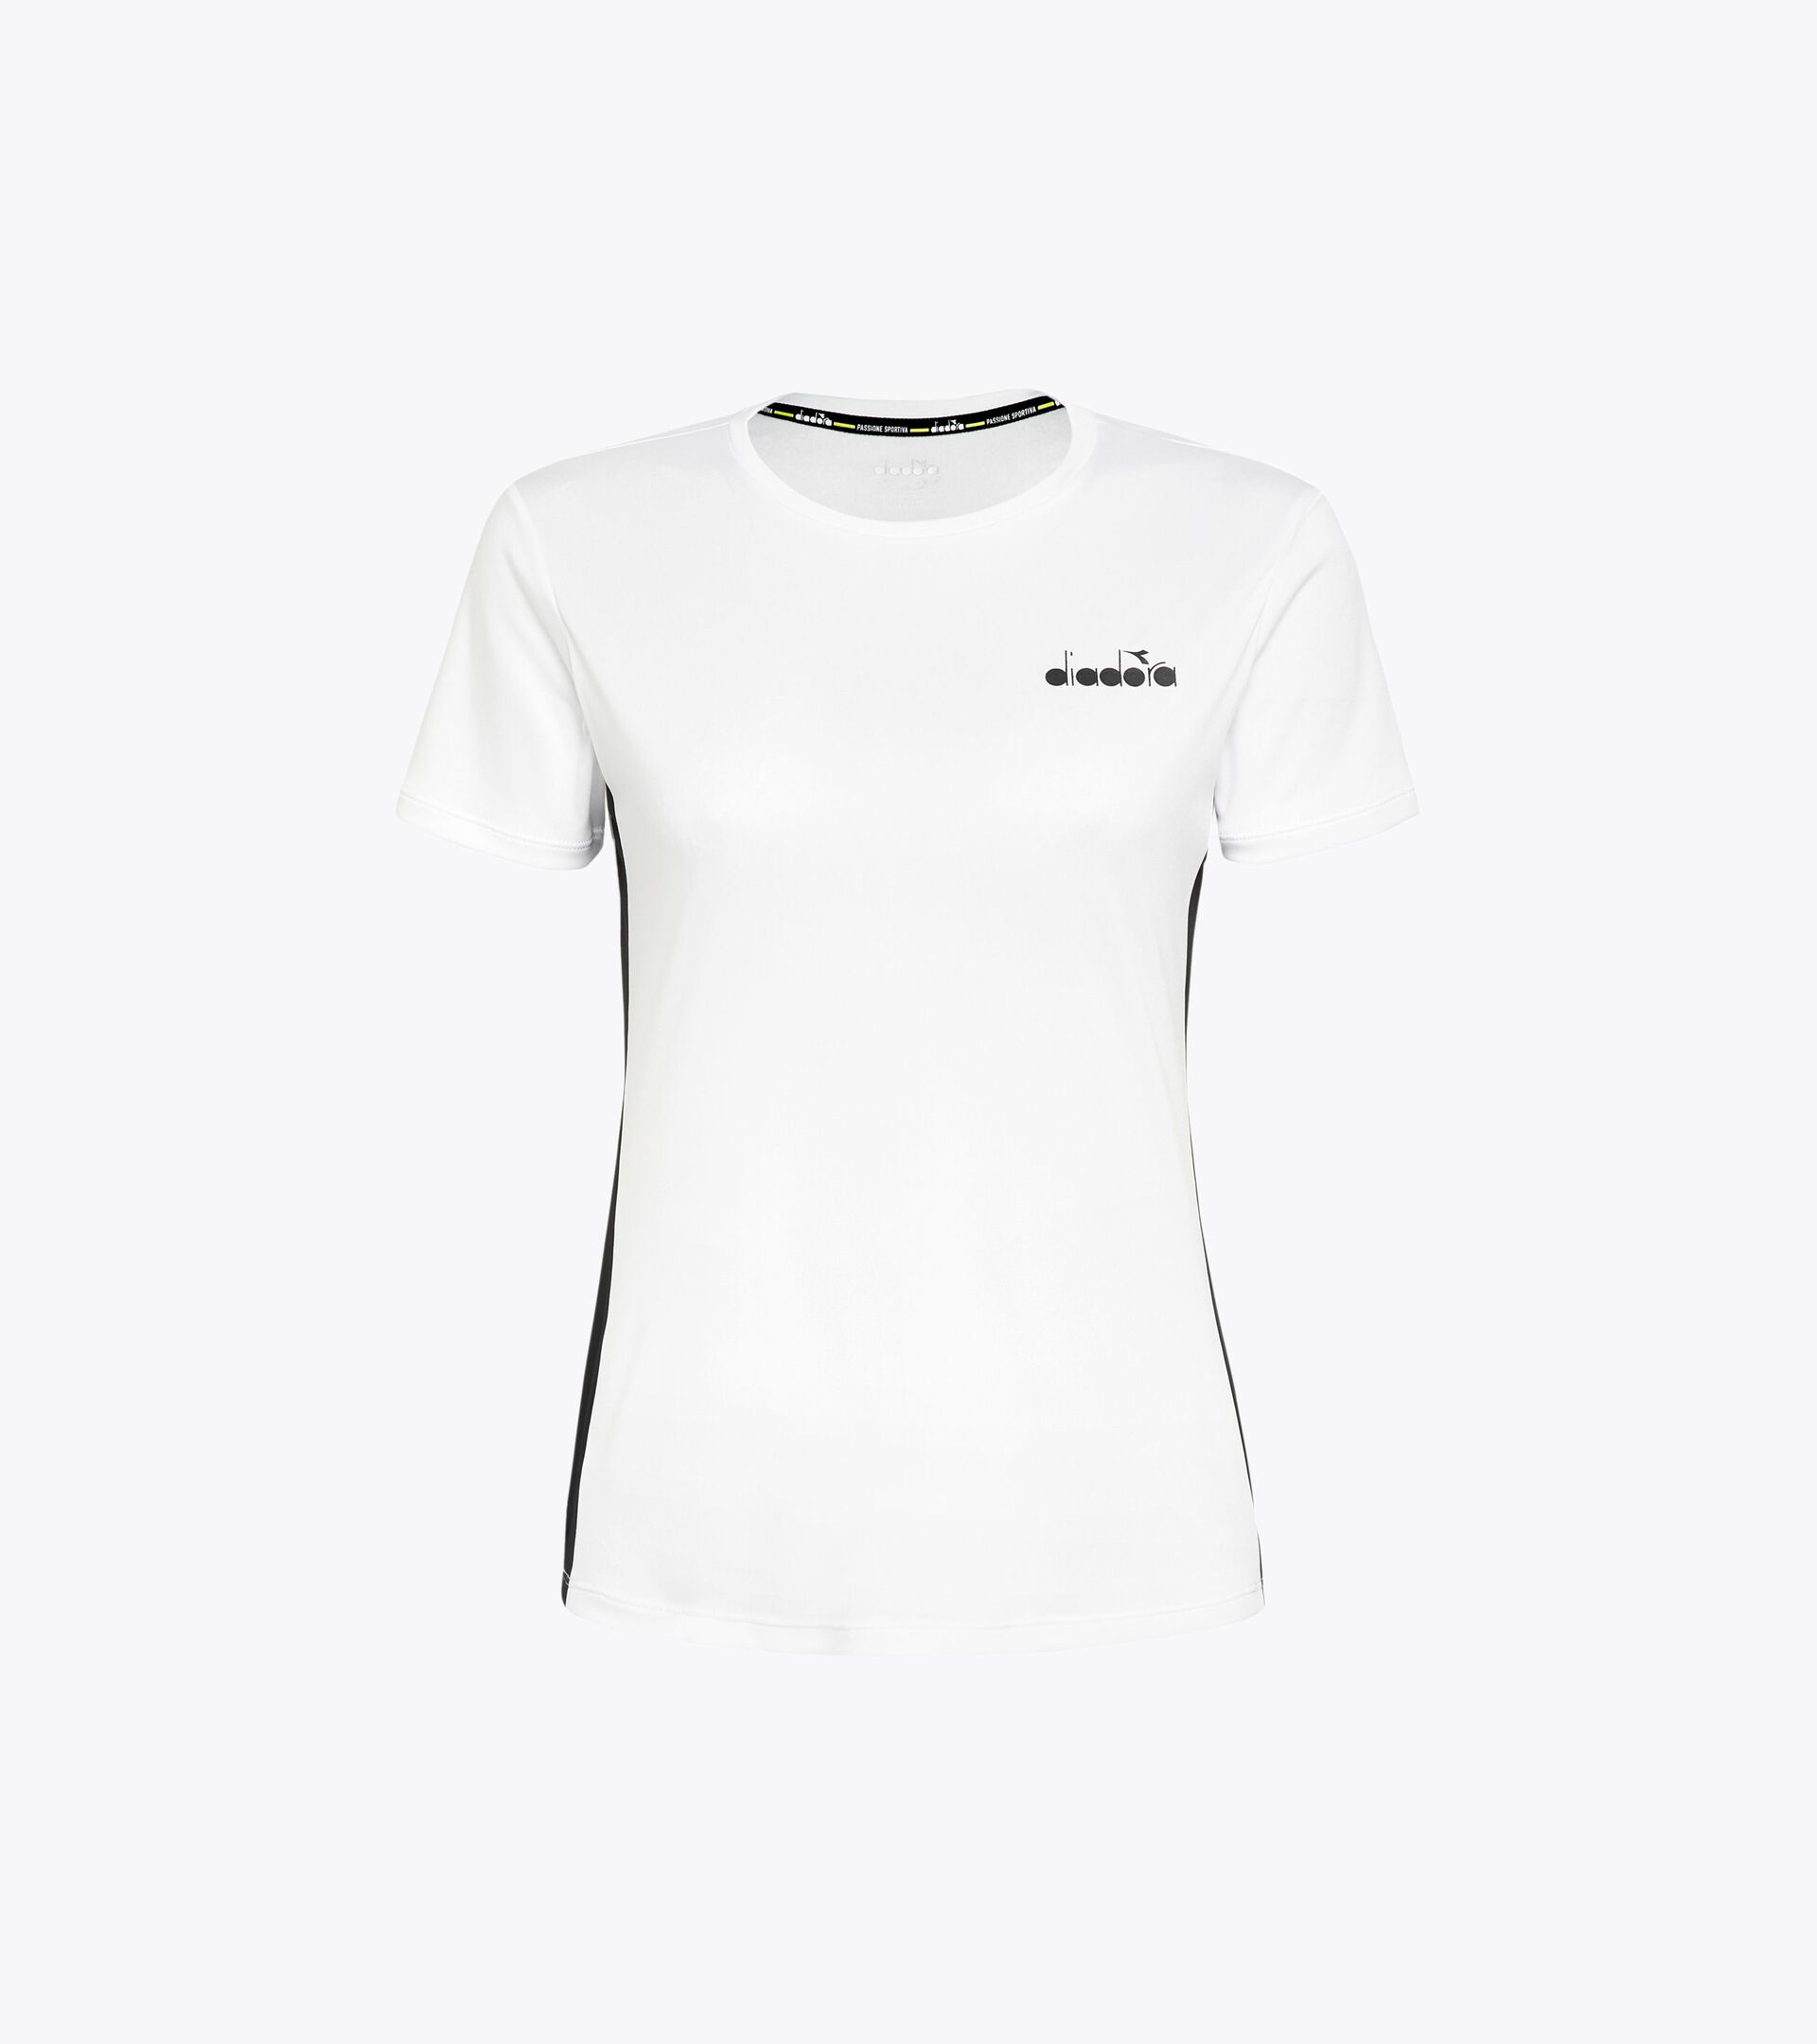 Tennis-T-Shirt - Damen L. SS T-SHIRT STRAHLENDE WEISS/SCHWARZ - Diadora